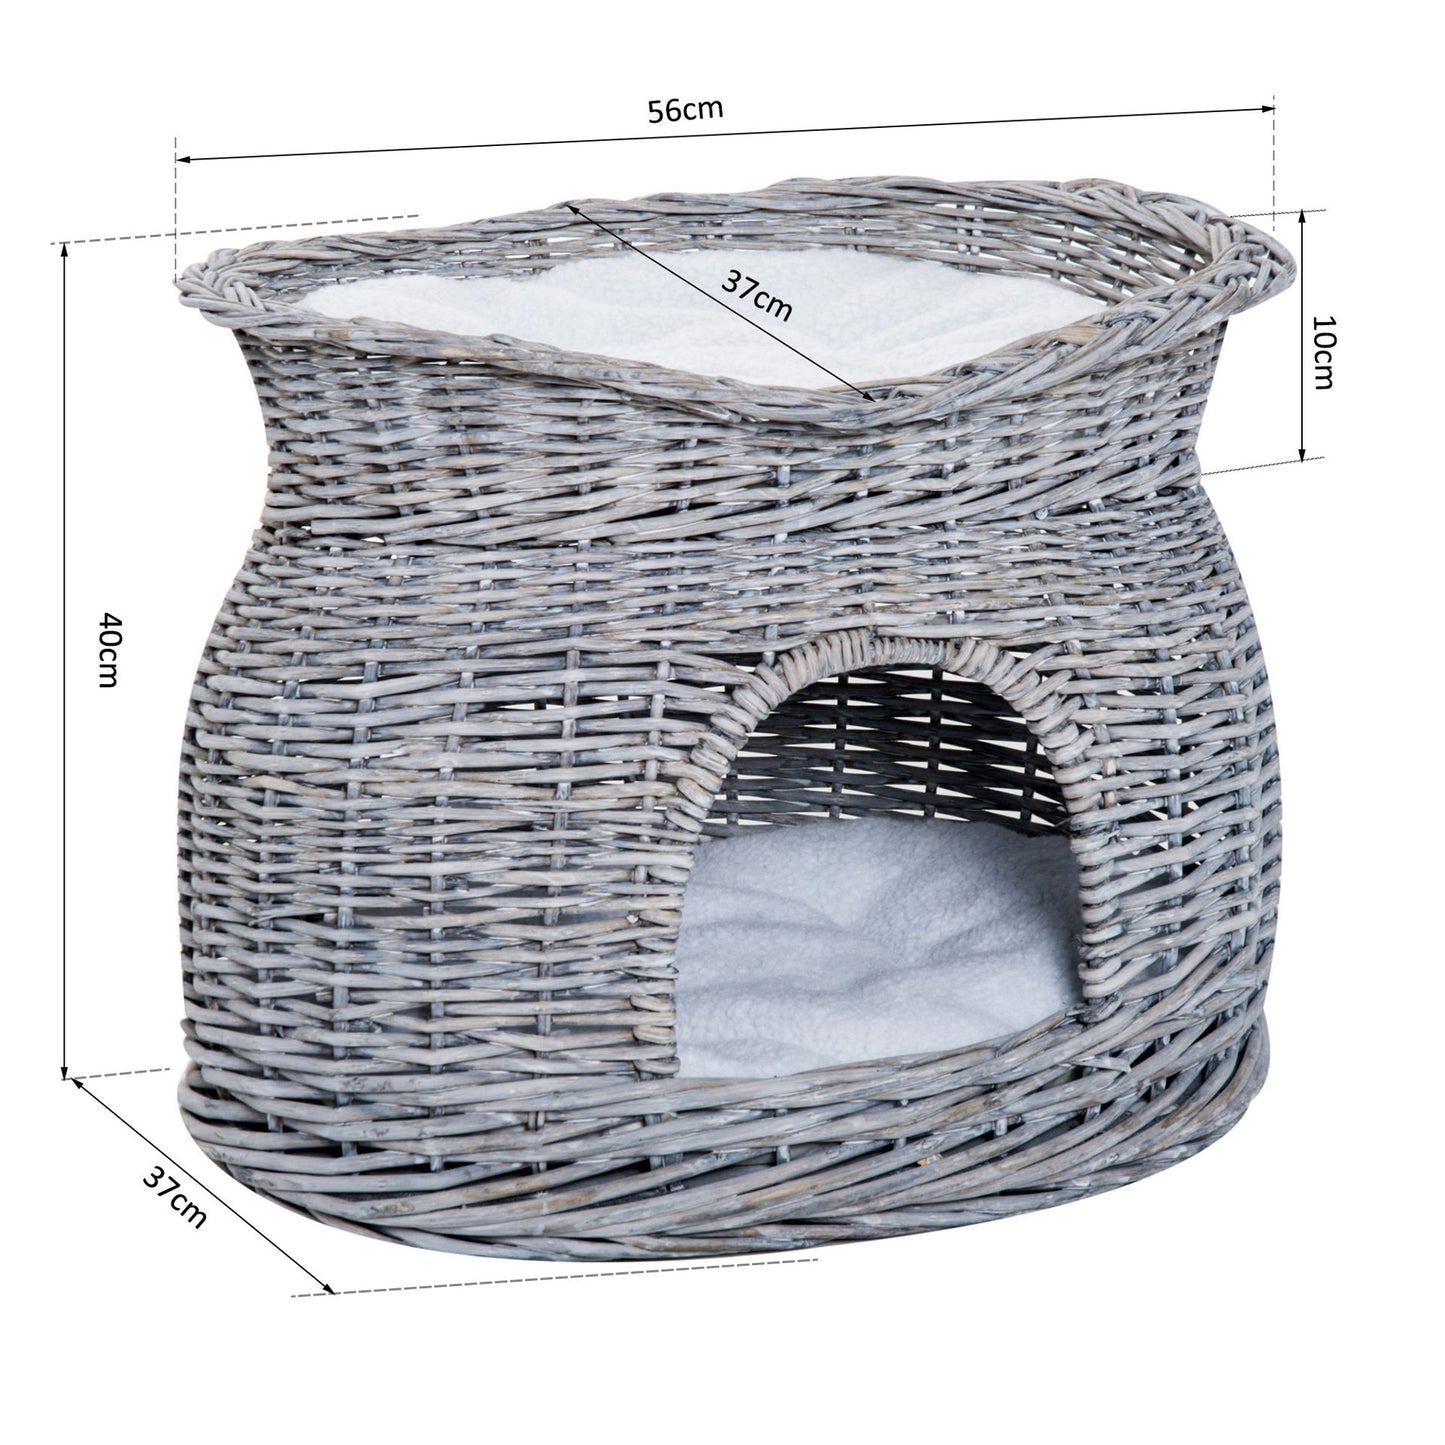 Nancy's Annand Bog Lit pour chat en rotin Cabane pour chat avec coussin Grotte pour chat Maison pour chat avec toit couché